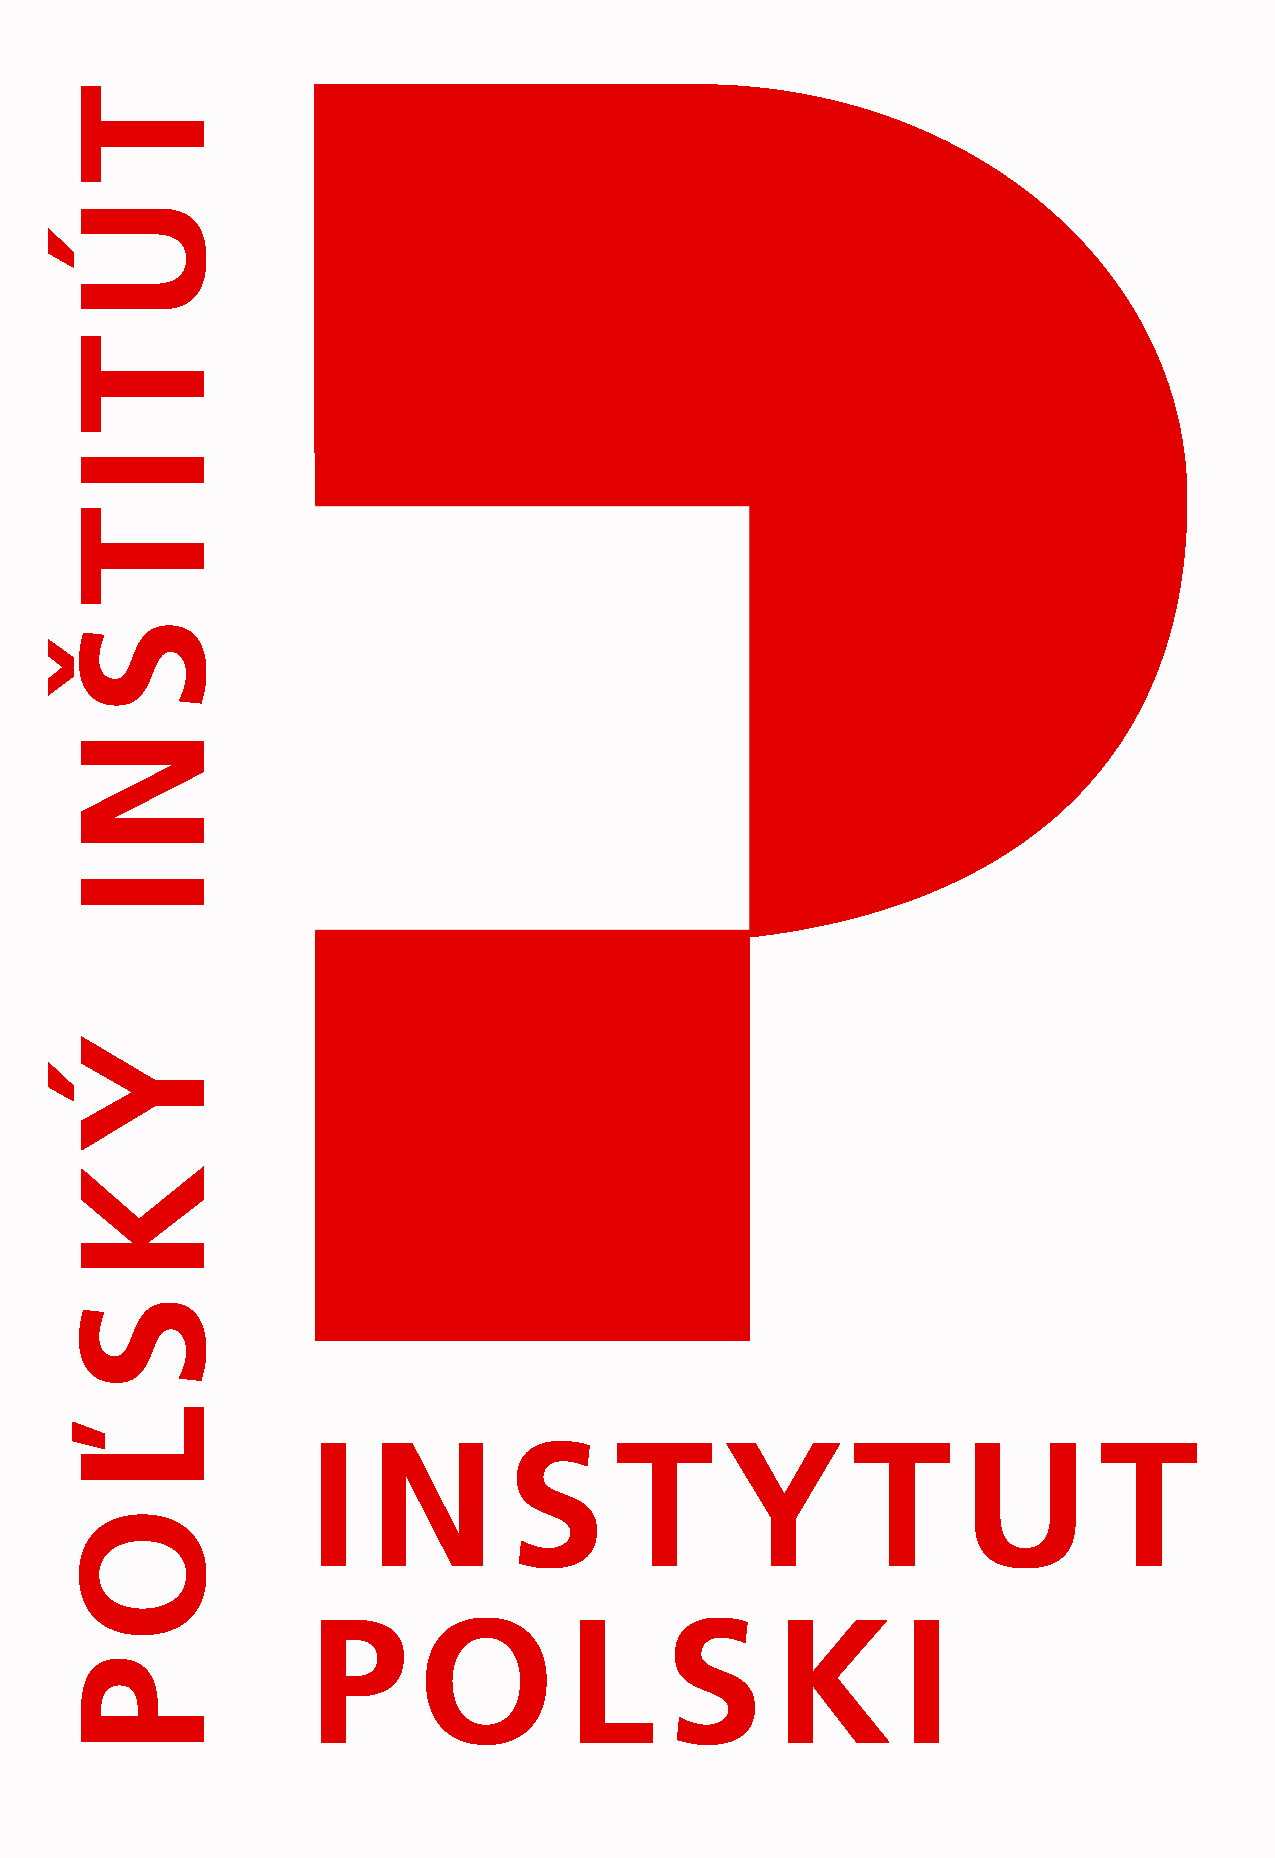 Poľský inštitút - logo